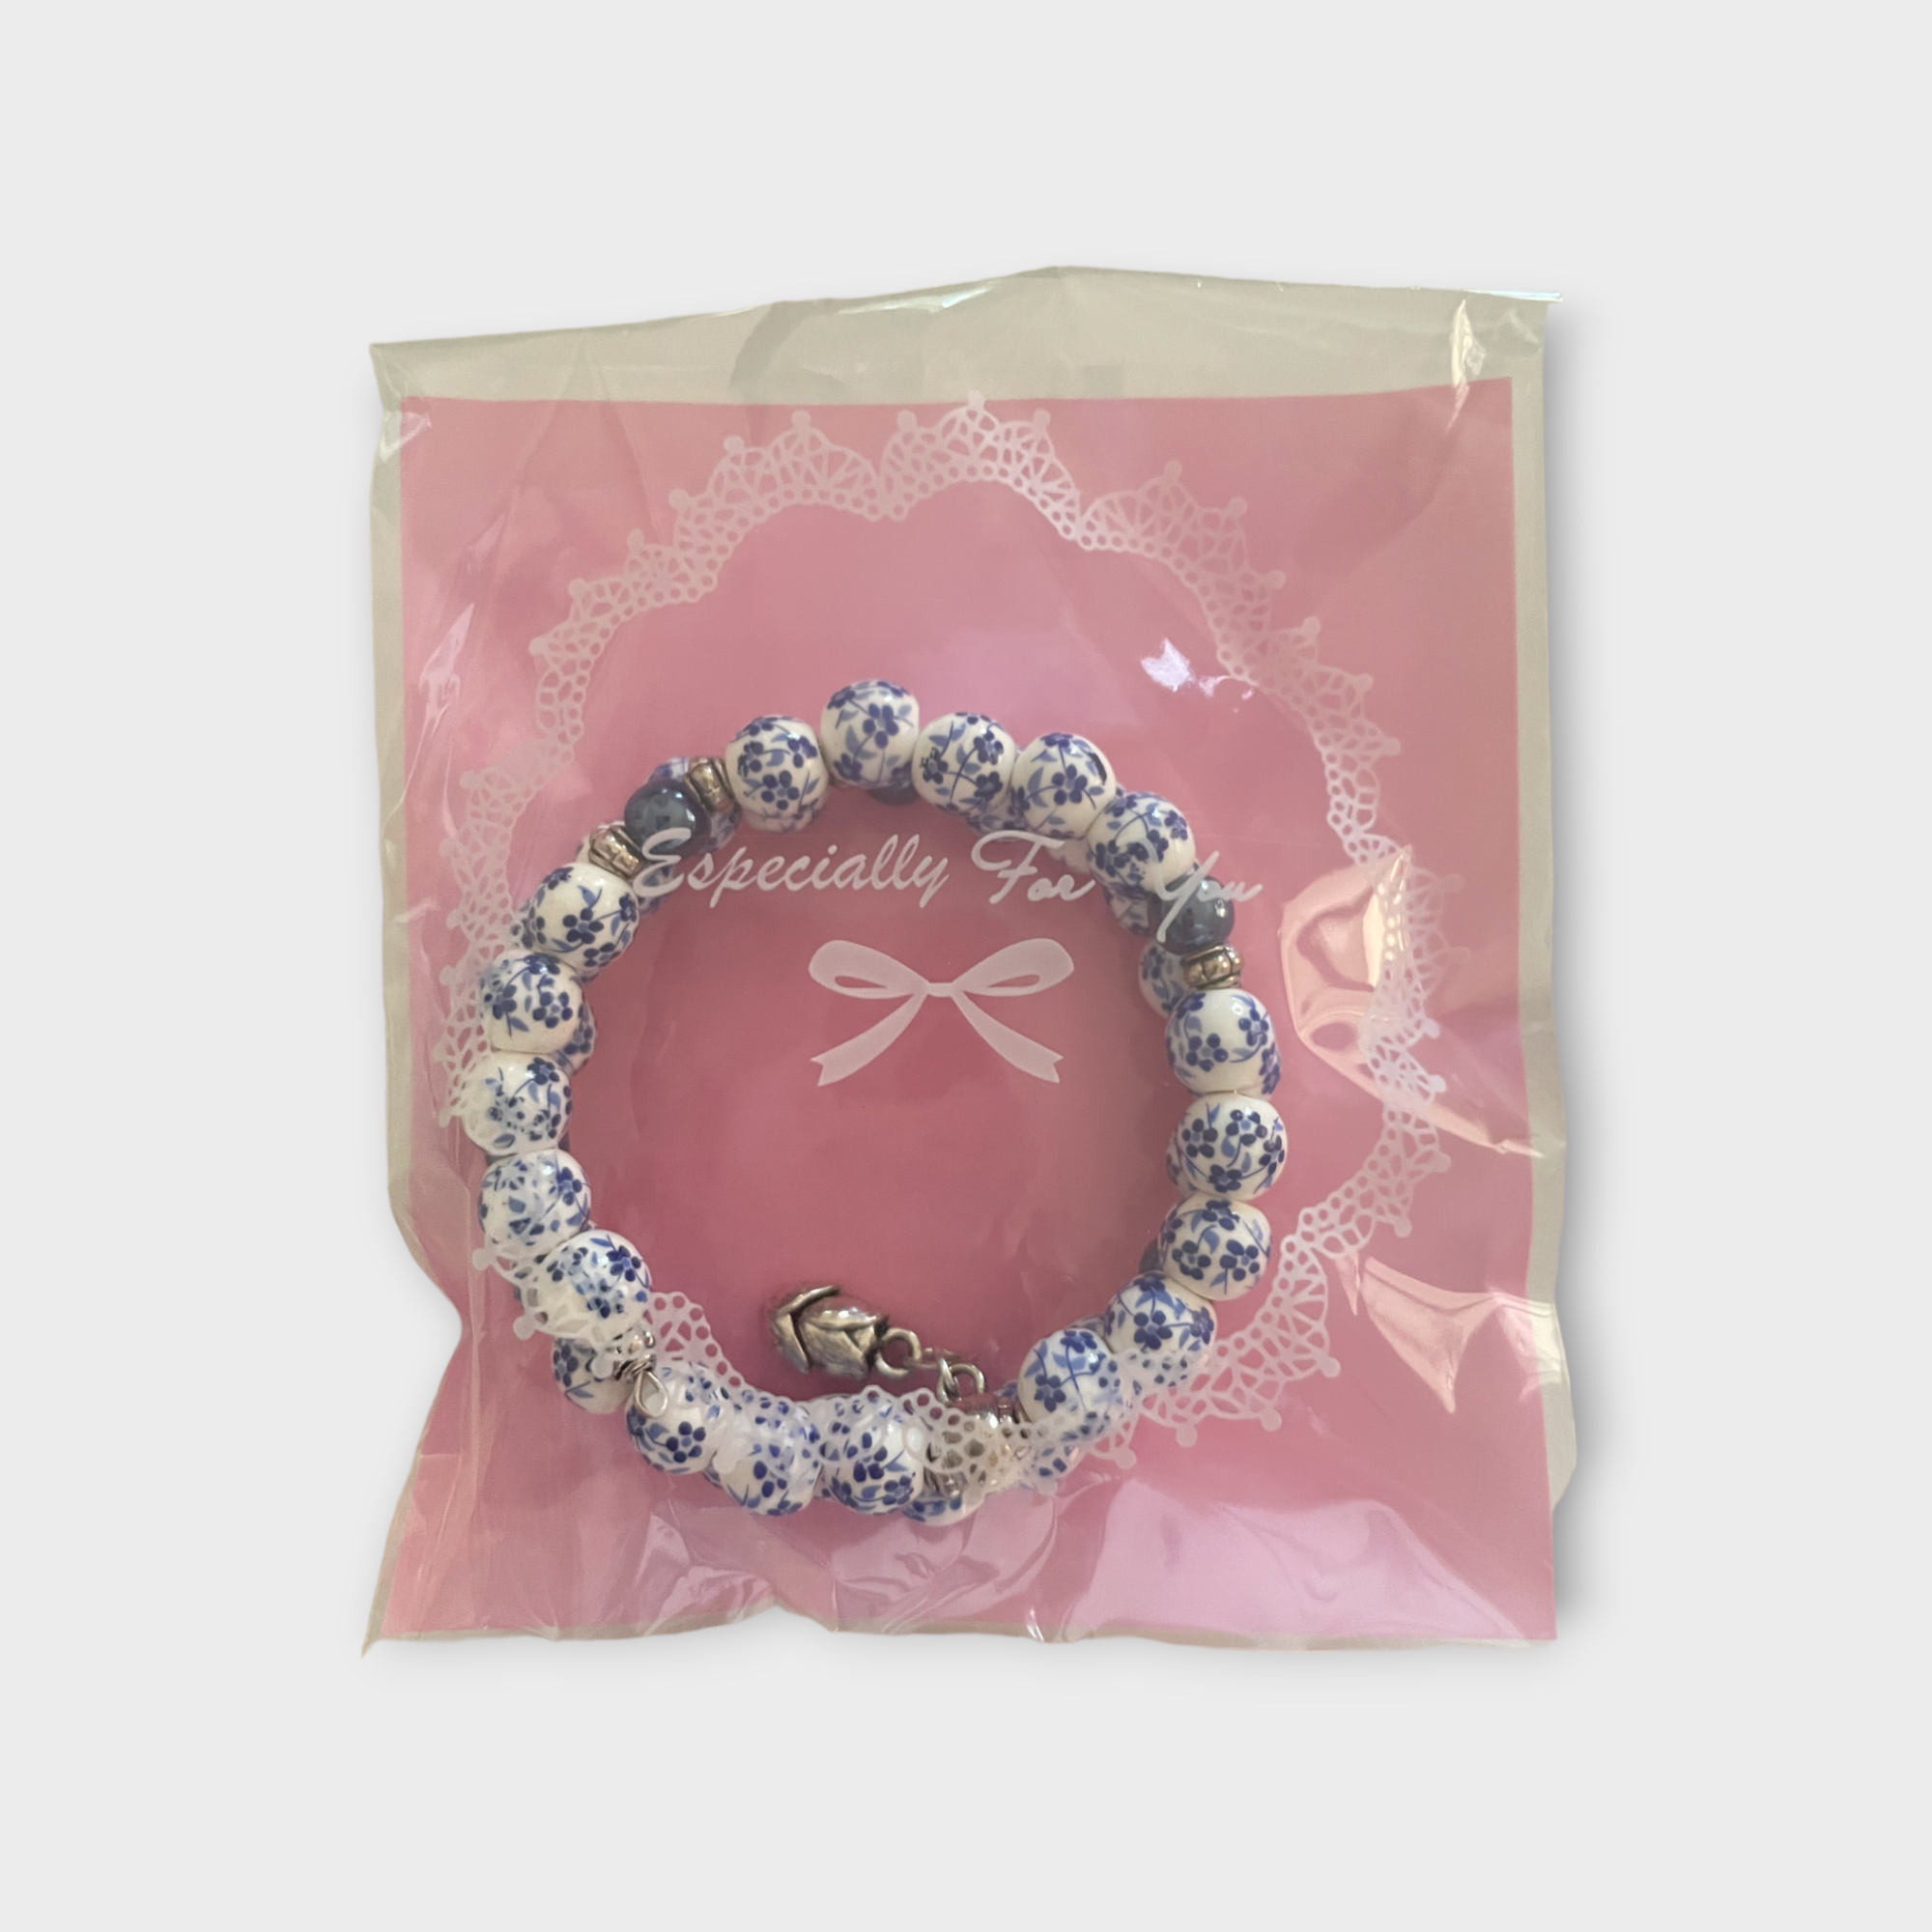 Delft blue ceramic bracelet Double